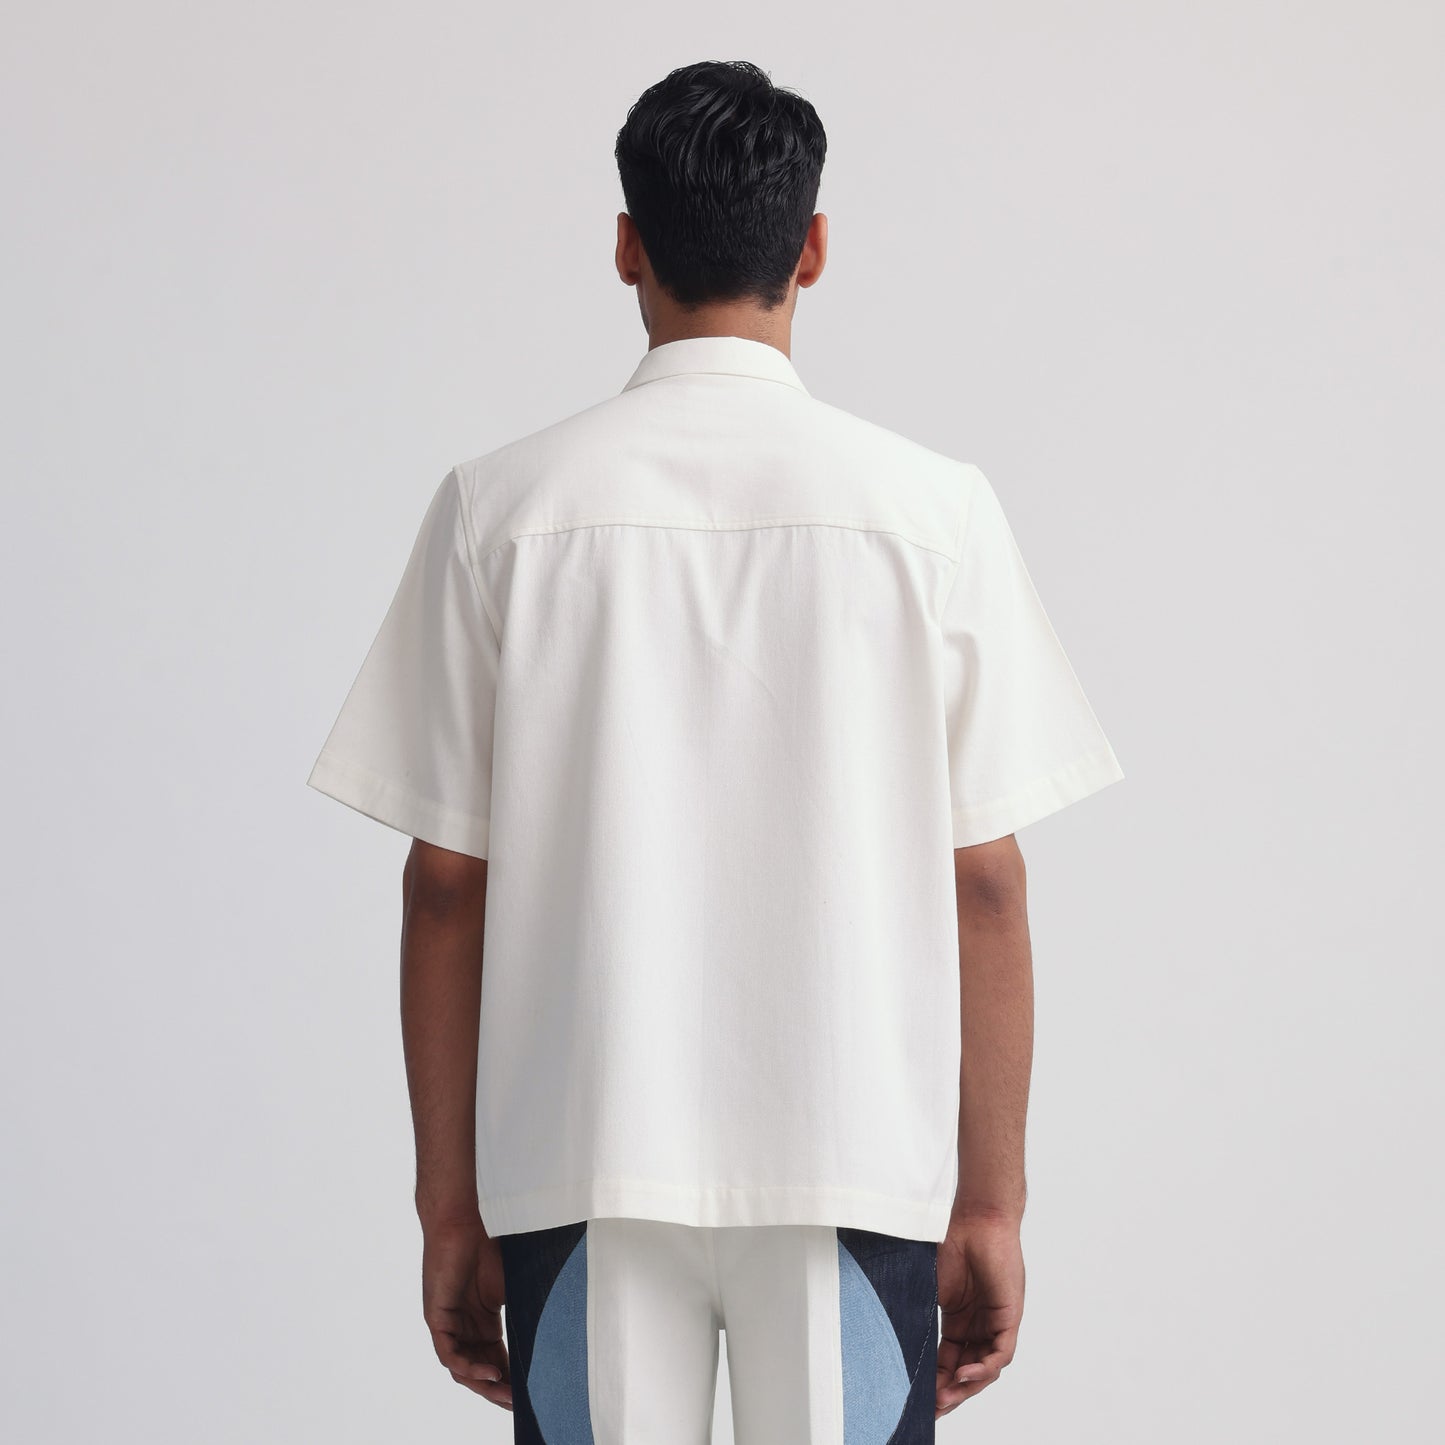 Vertebrae Symbolic Shirt- Off White